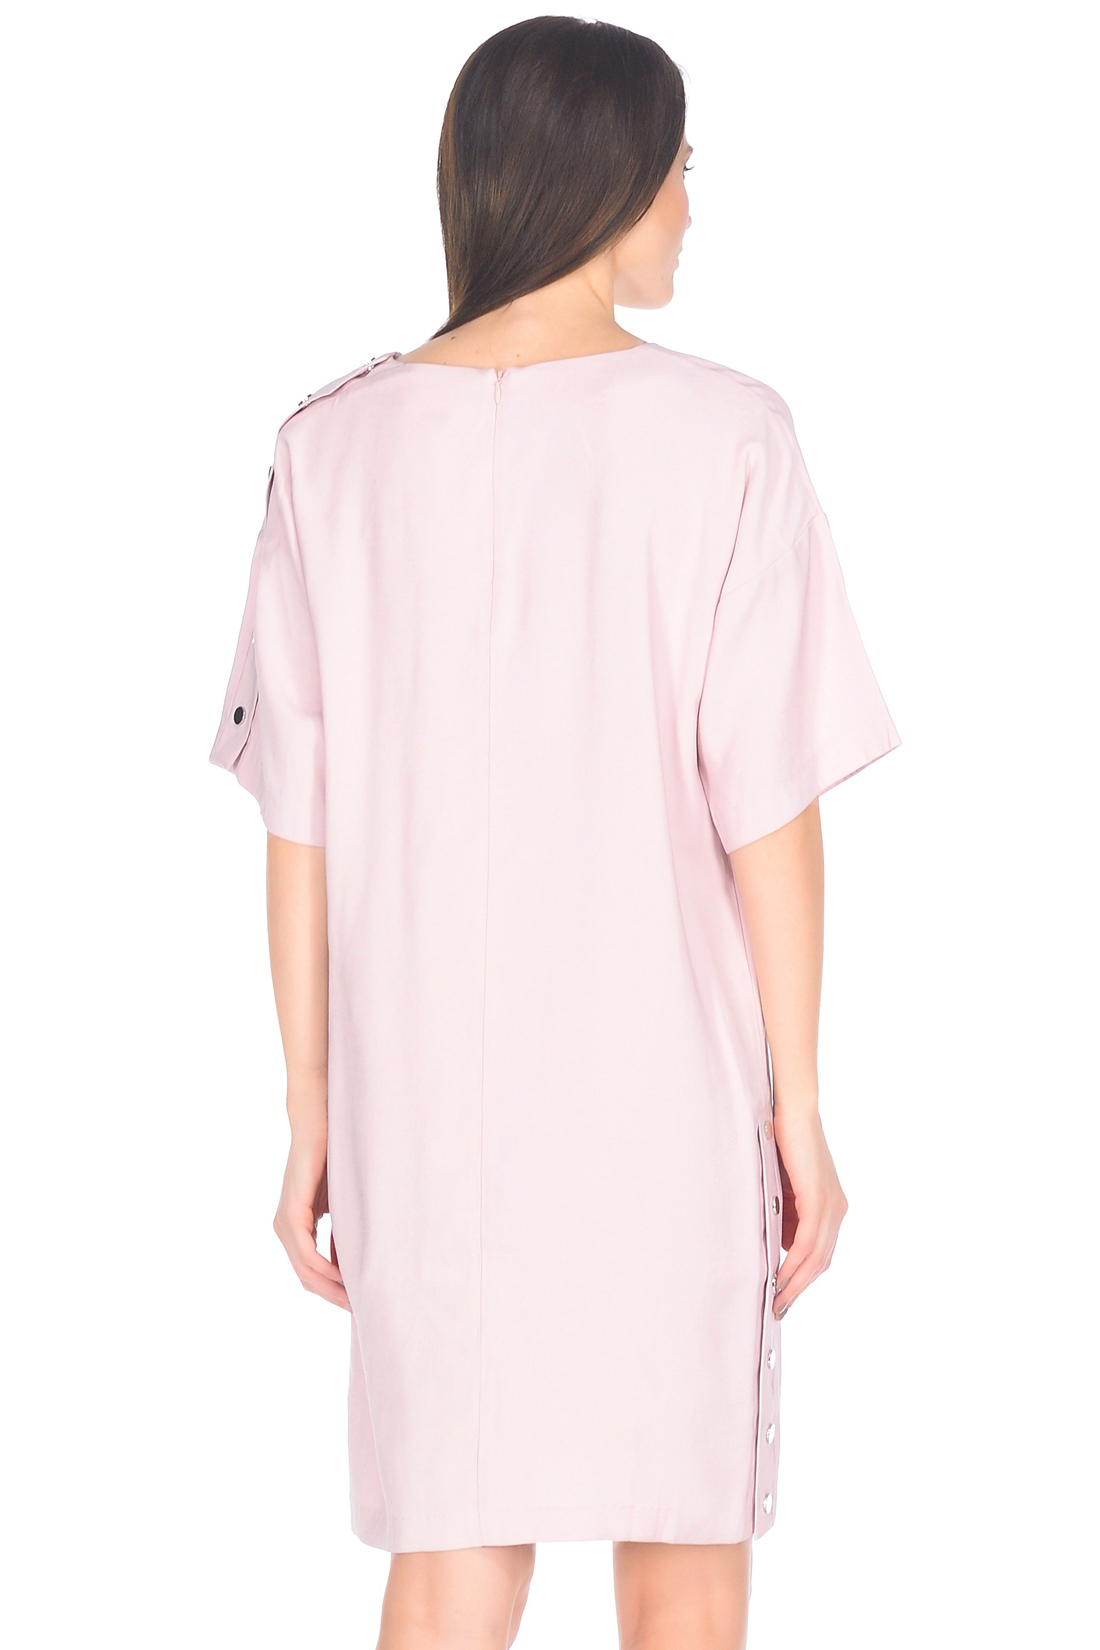 Свободное платье с кнопками (арт. baon B458011), размер XXL, цвет розовый Свободное платье с кнопками (арт. baon B458011) - фото 2